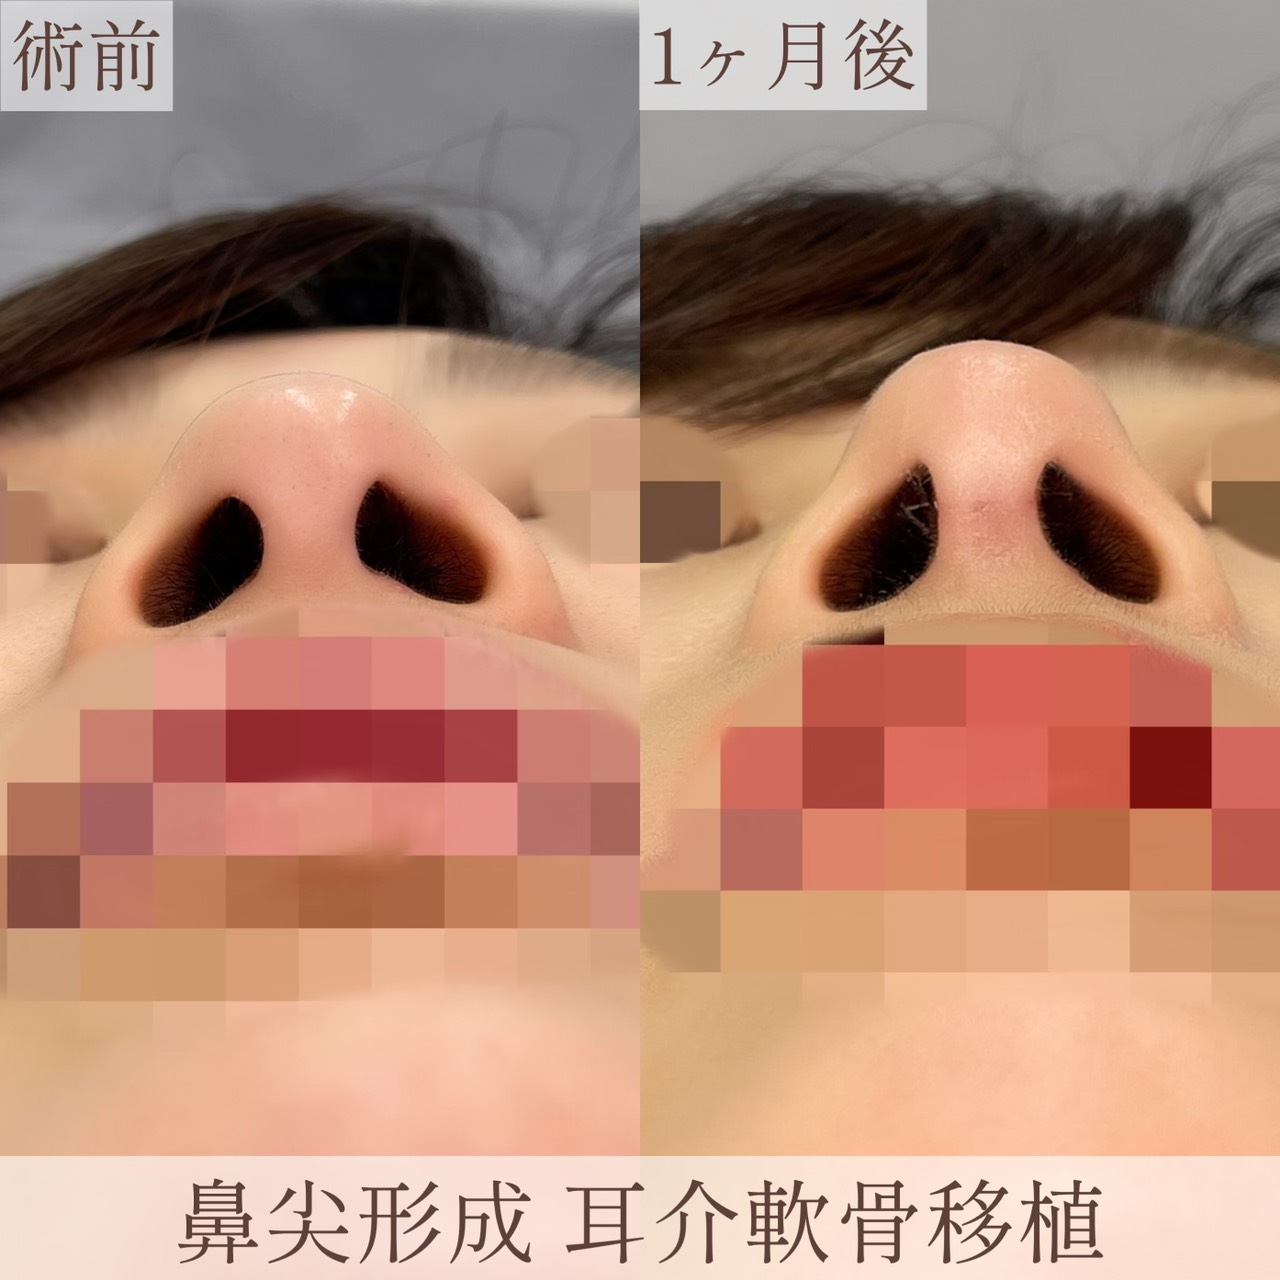 耳介軟骨移植+鼻尖形成の画像